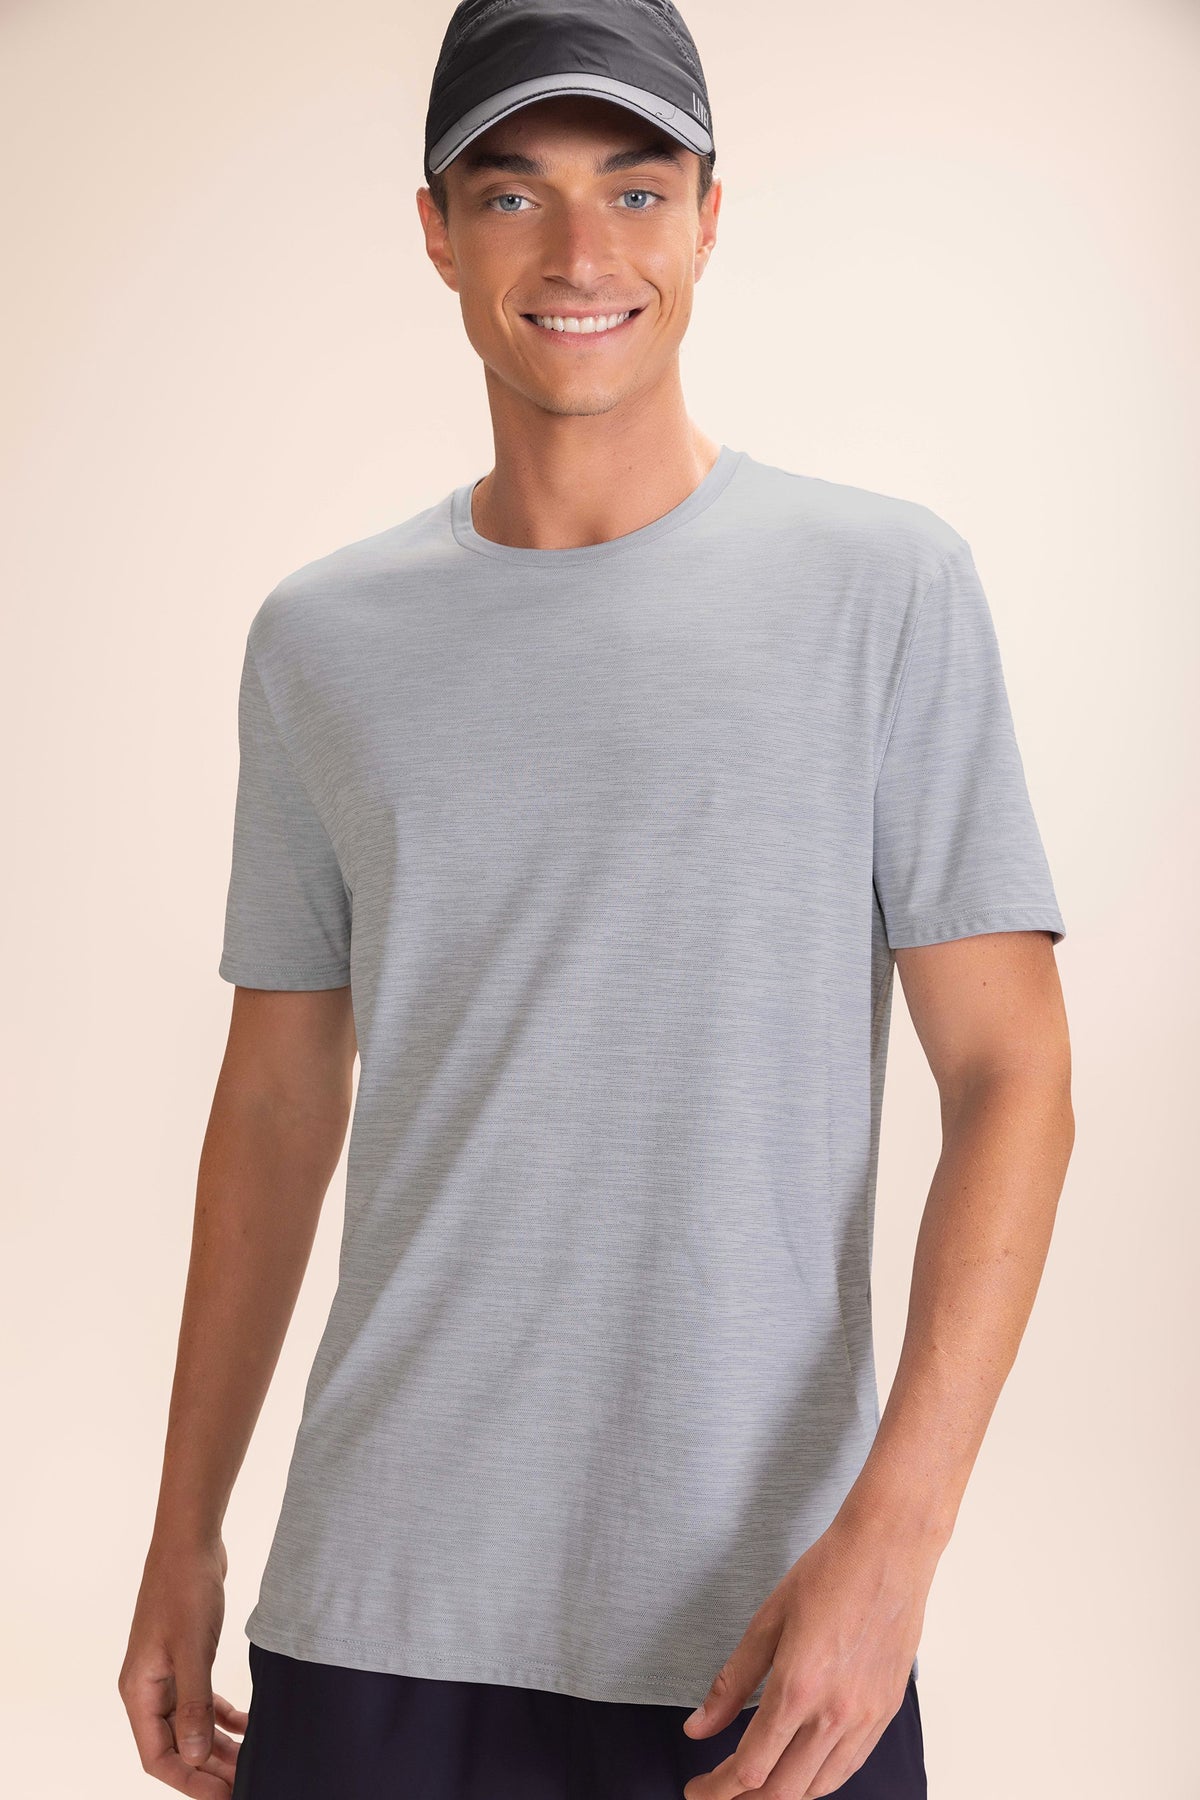 Comfy Merged Skin Men's T-shirt